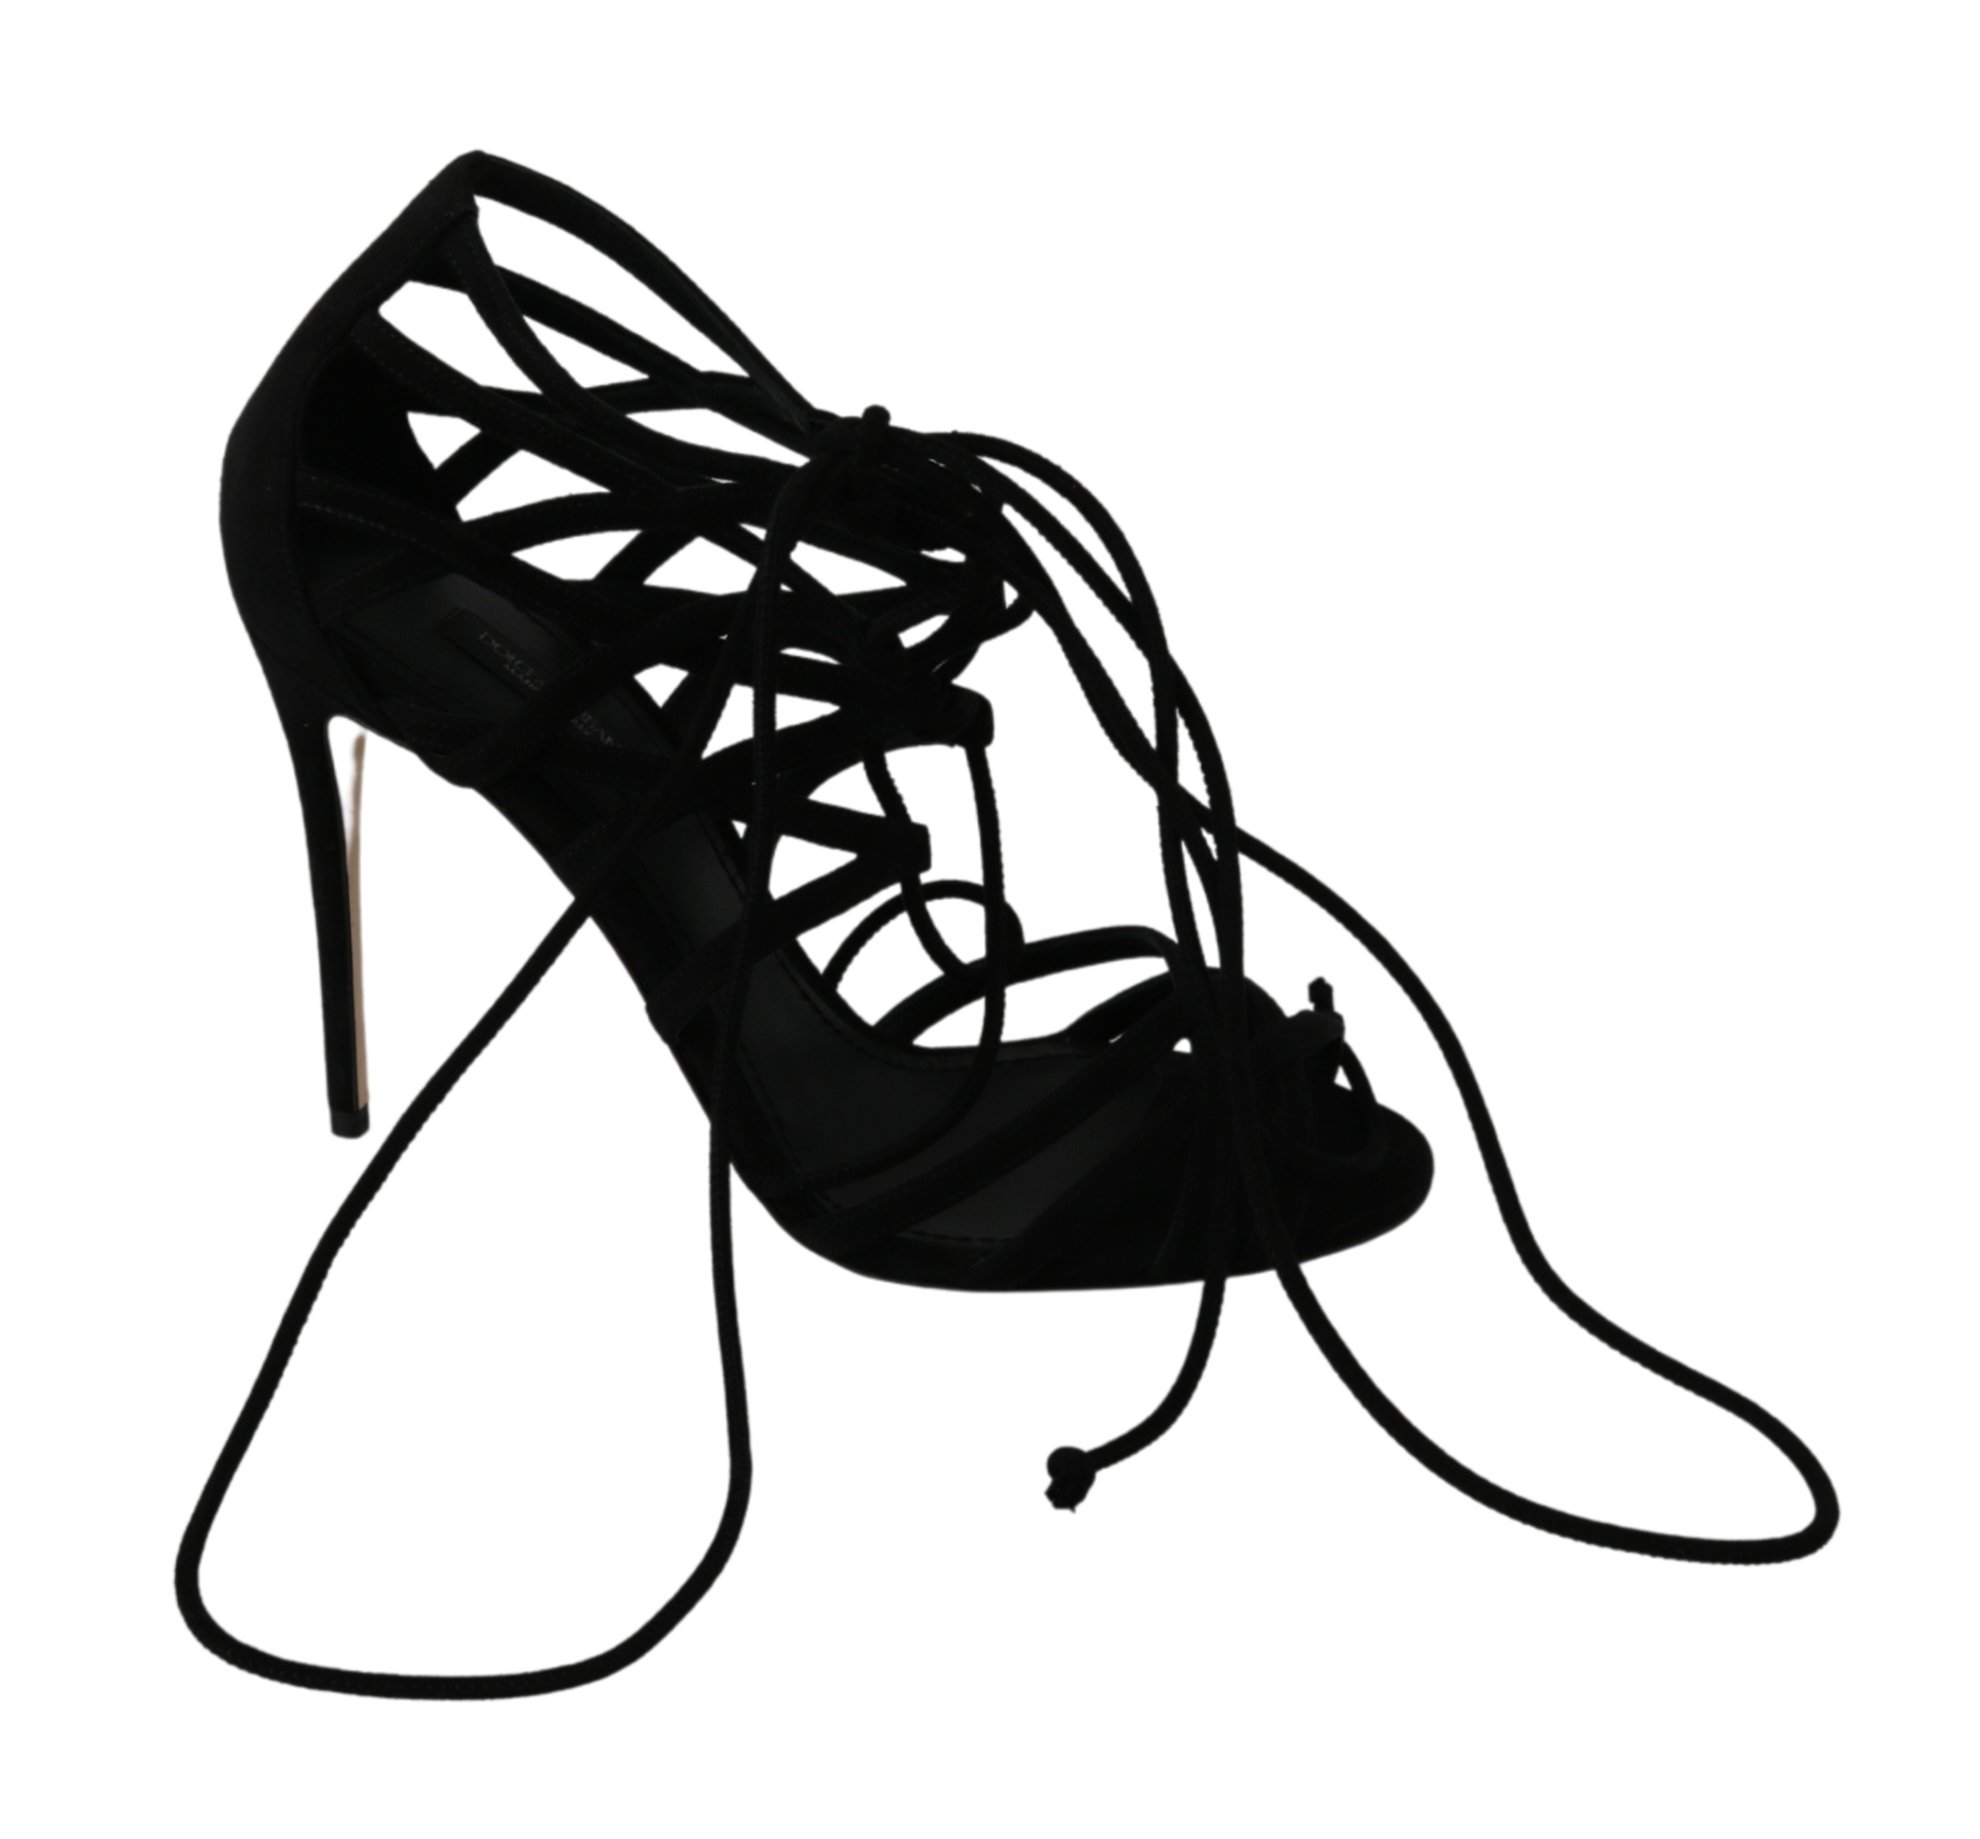 Black Suede Strap Stilettos Shoes Sandals - EU36/US5.5